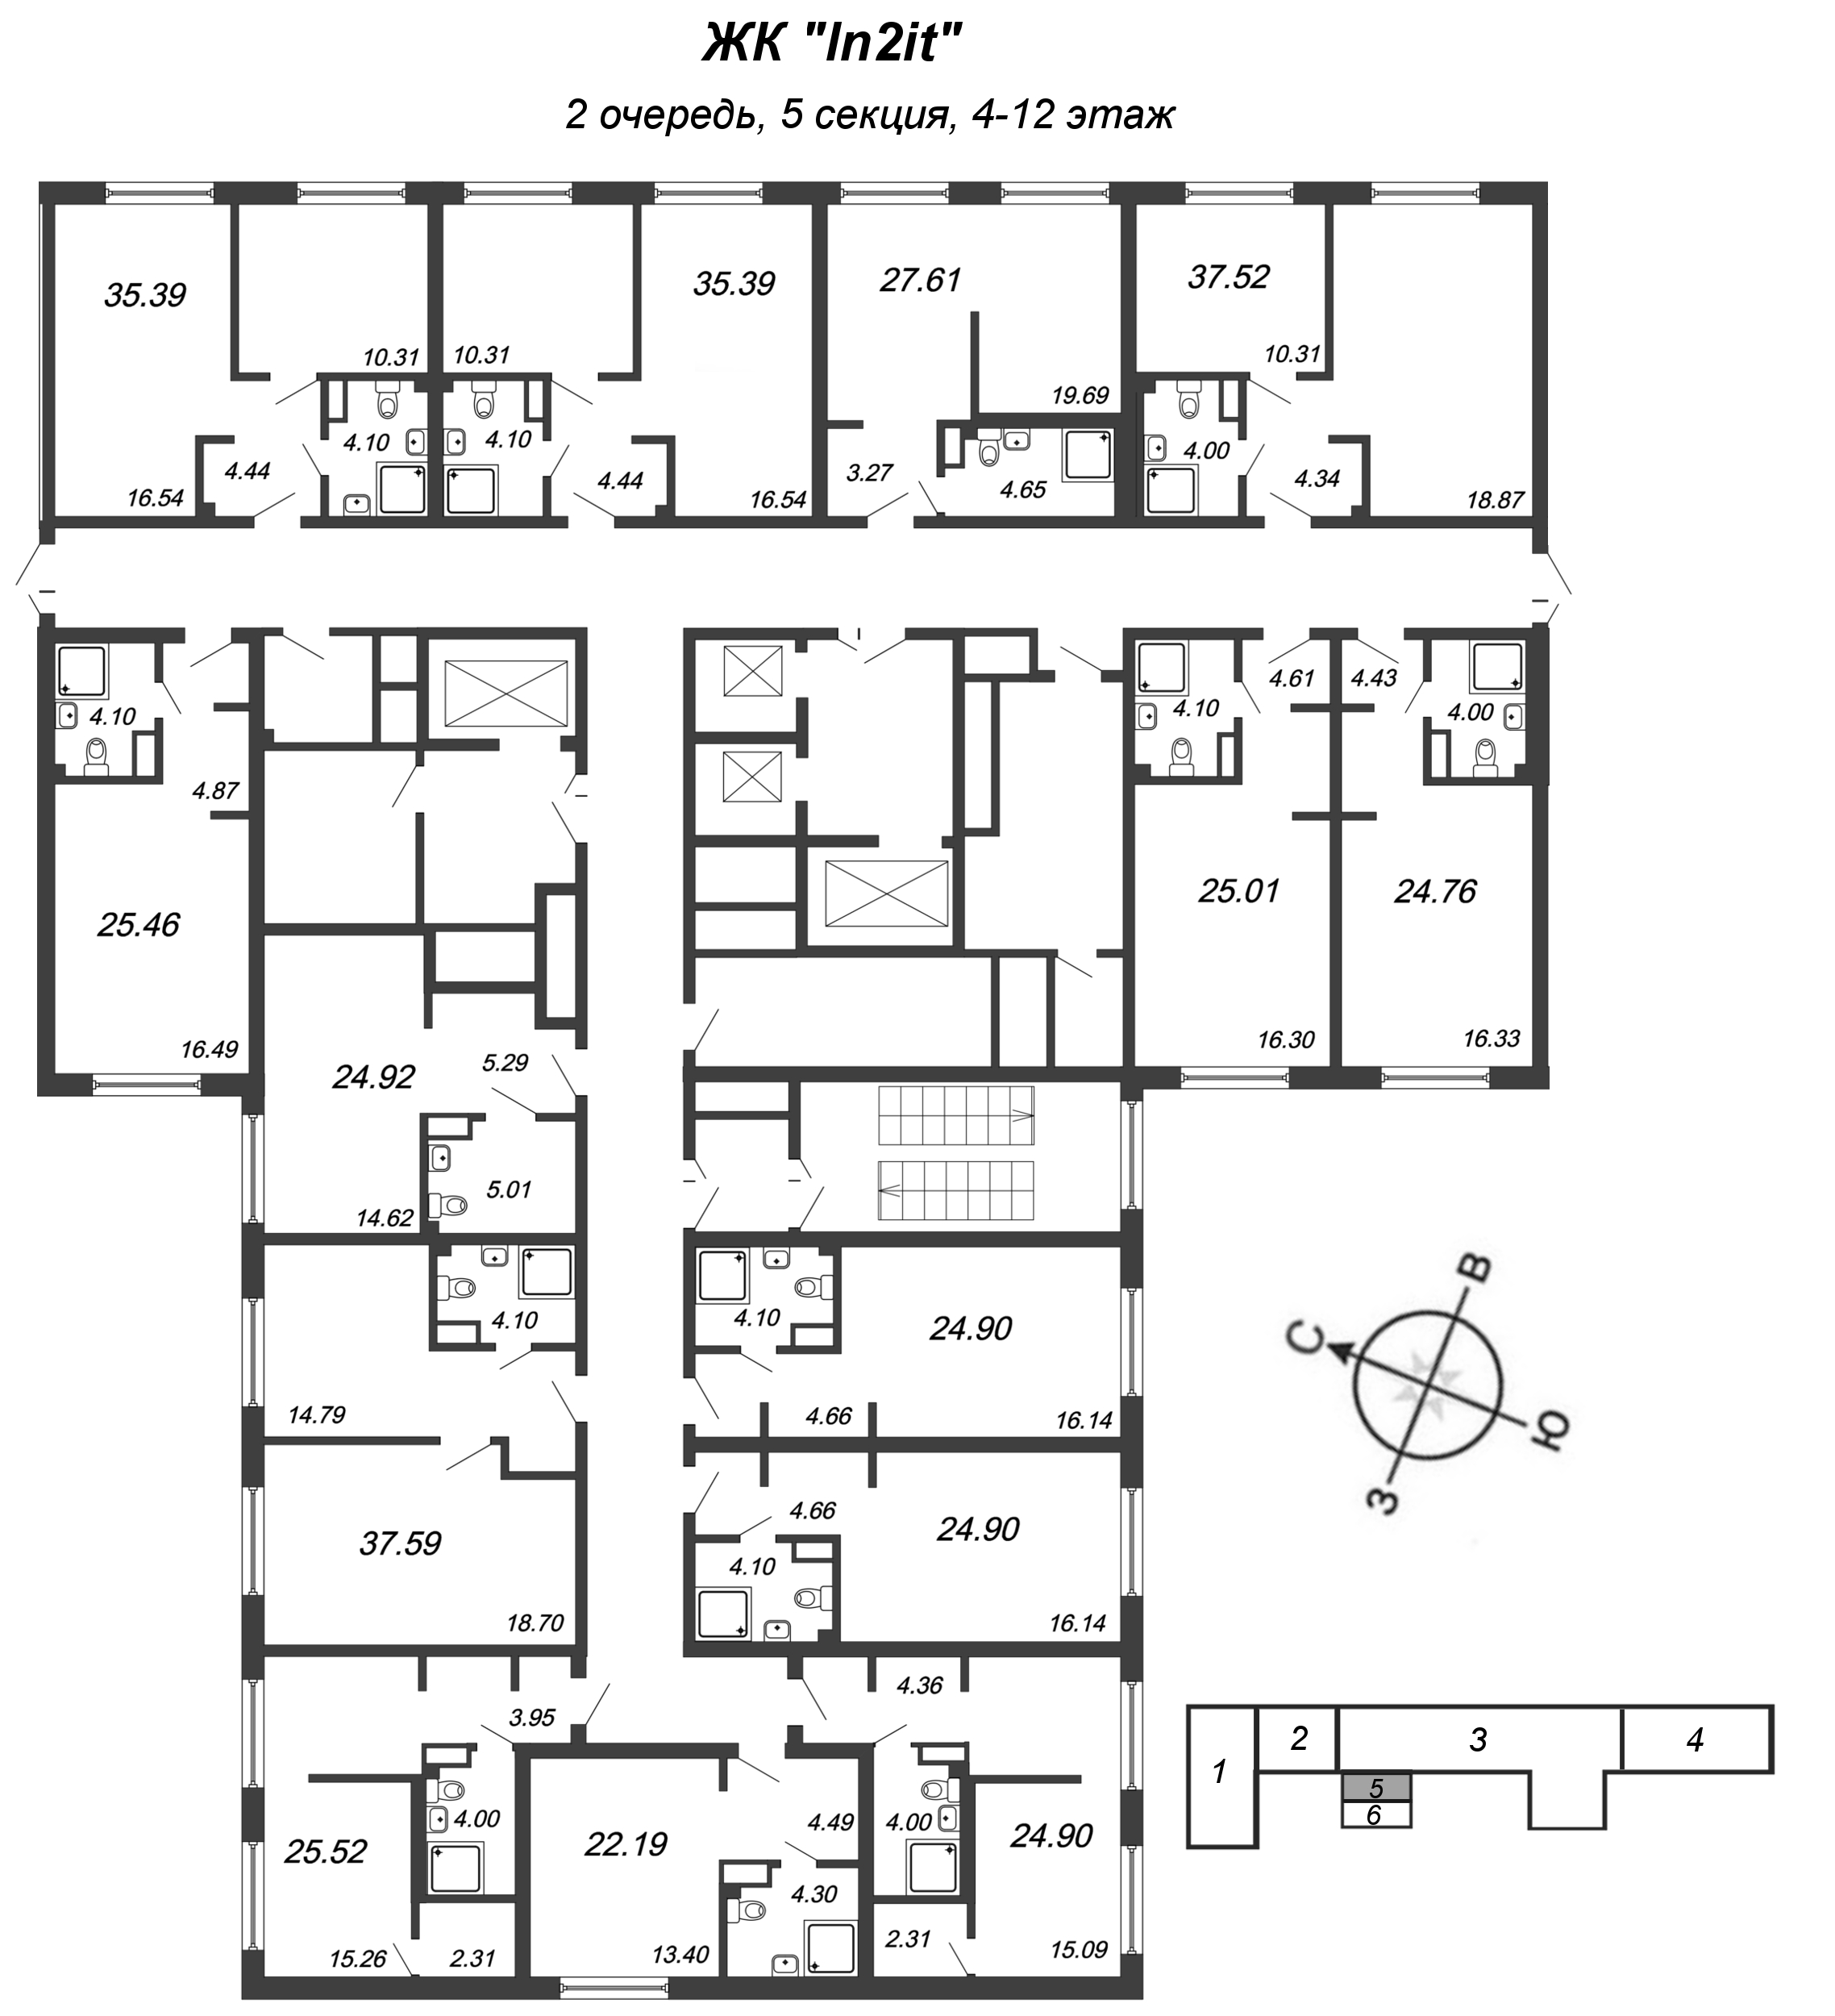 Квартира-студия, 24.9 м² в ЖК "In2it" - планировка этажа